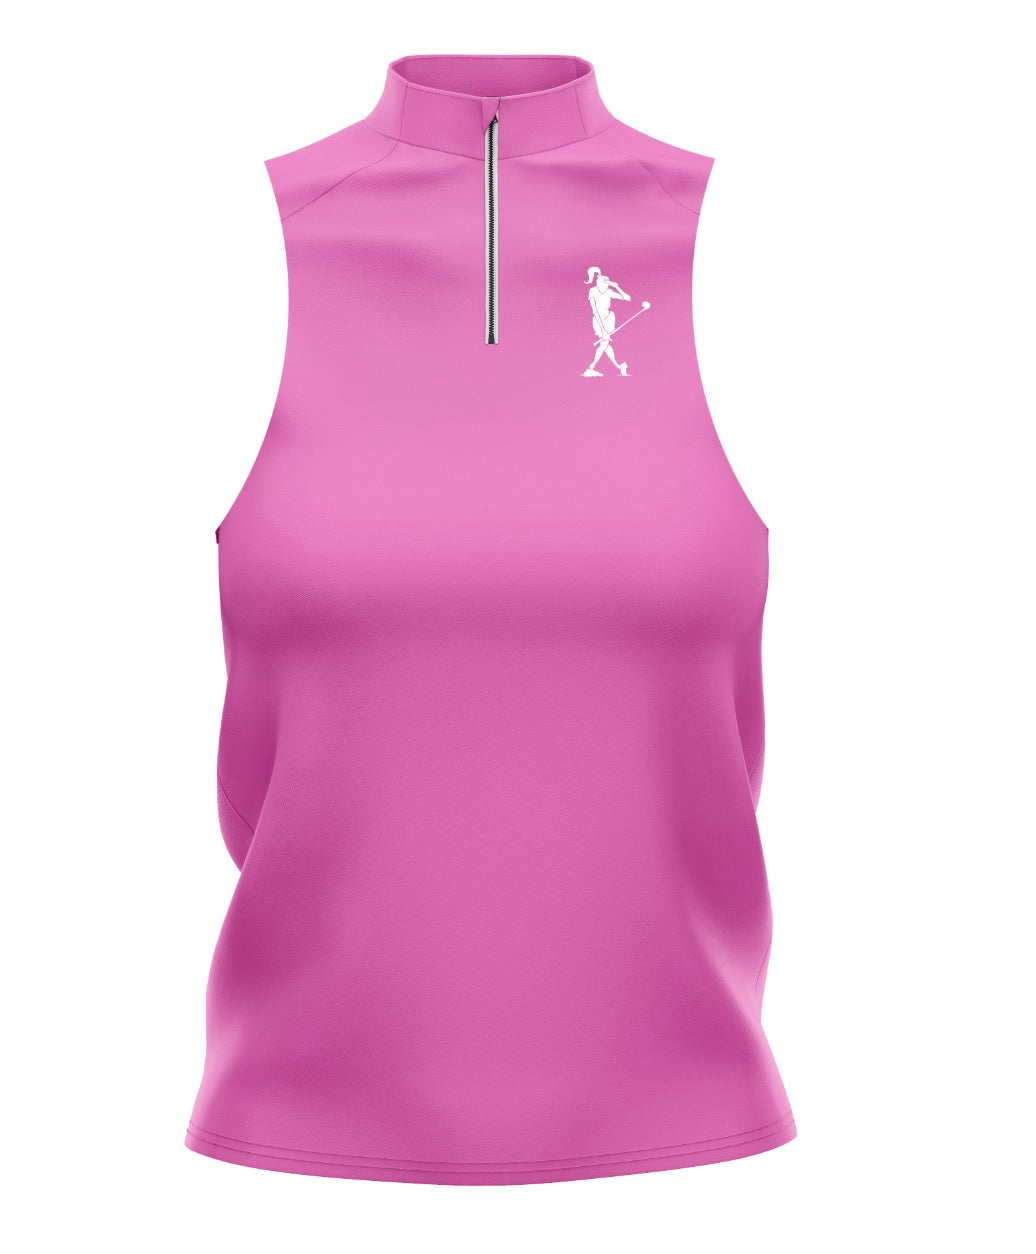 Just Pink Women's Golf Sleeveless Zip Polo